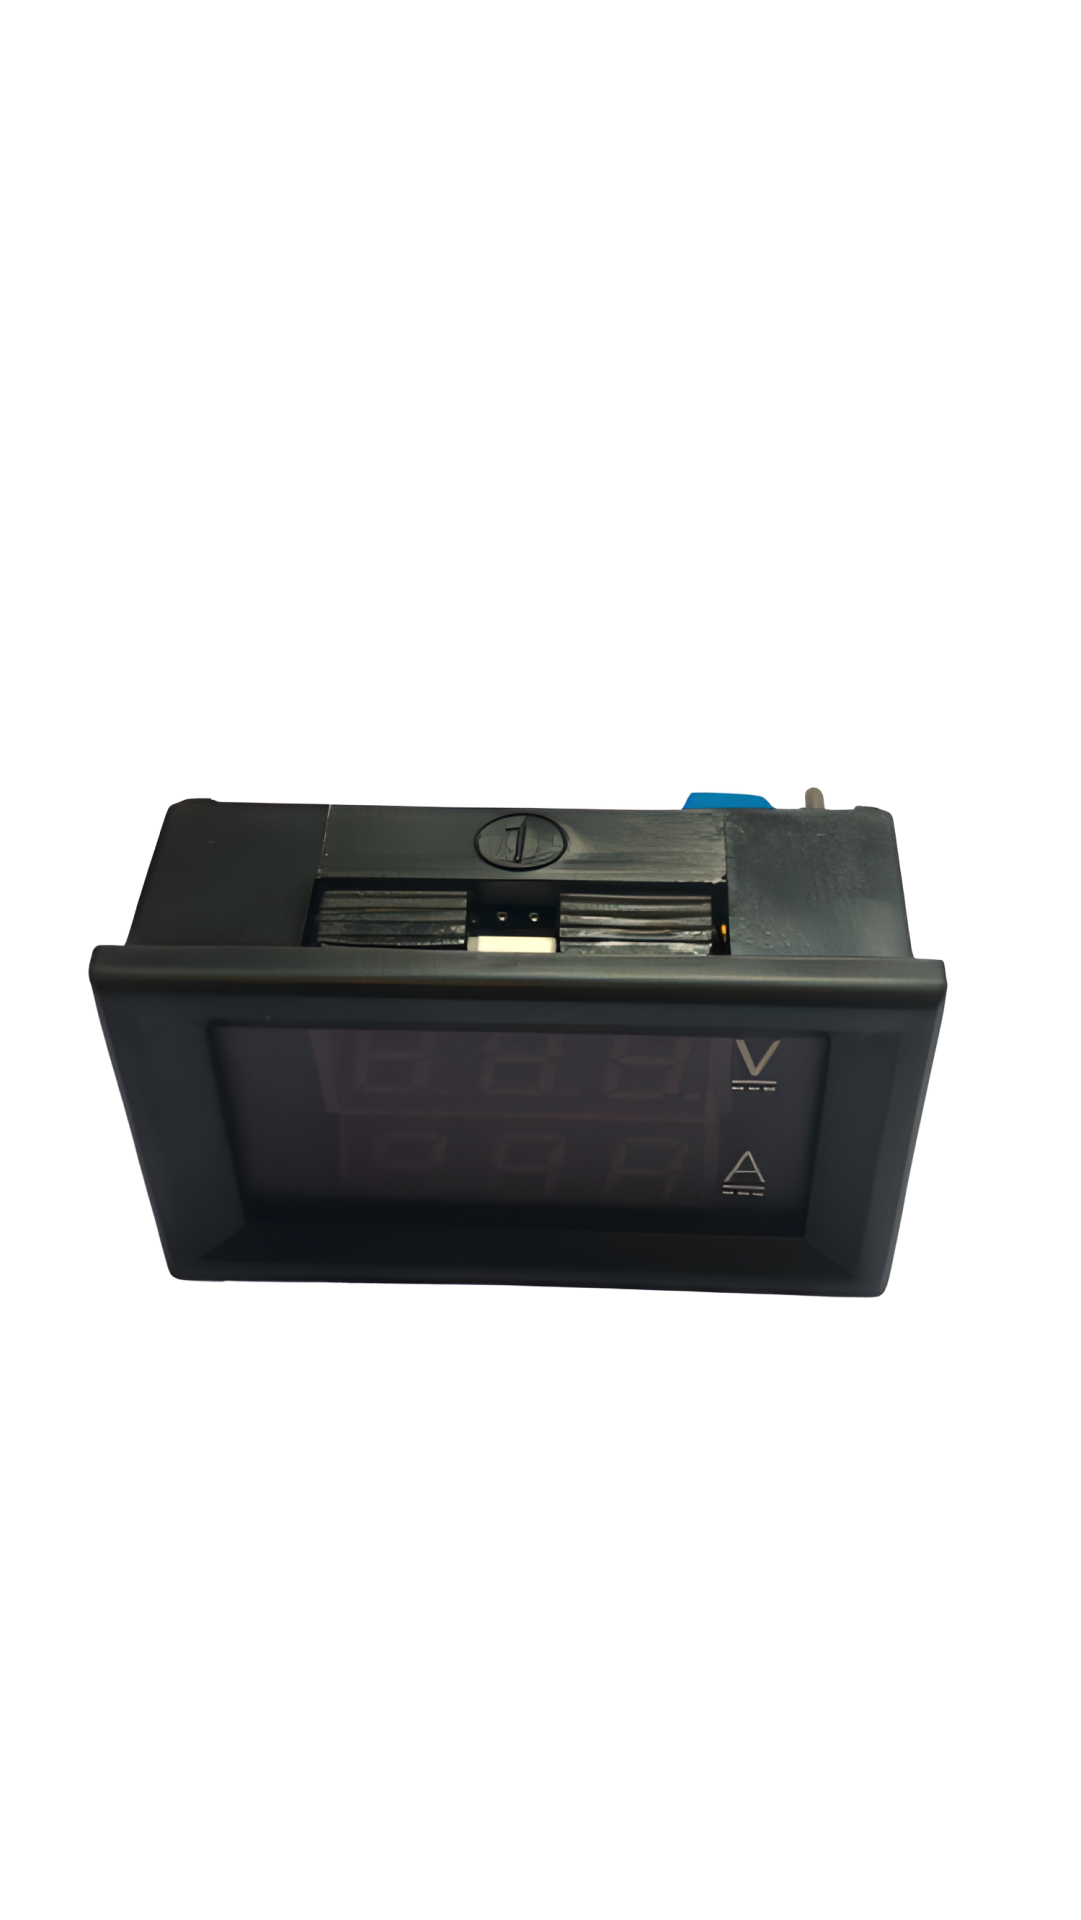 Digital Voltmeter and Ammeter (100V-10A) - 2